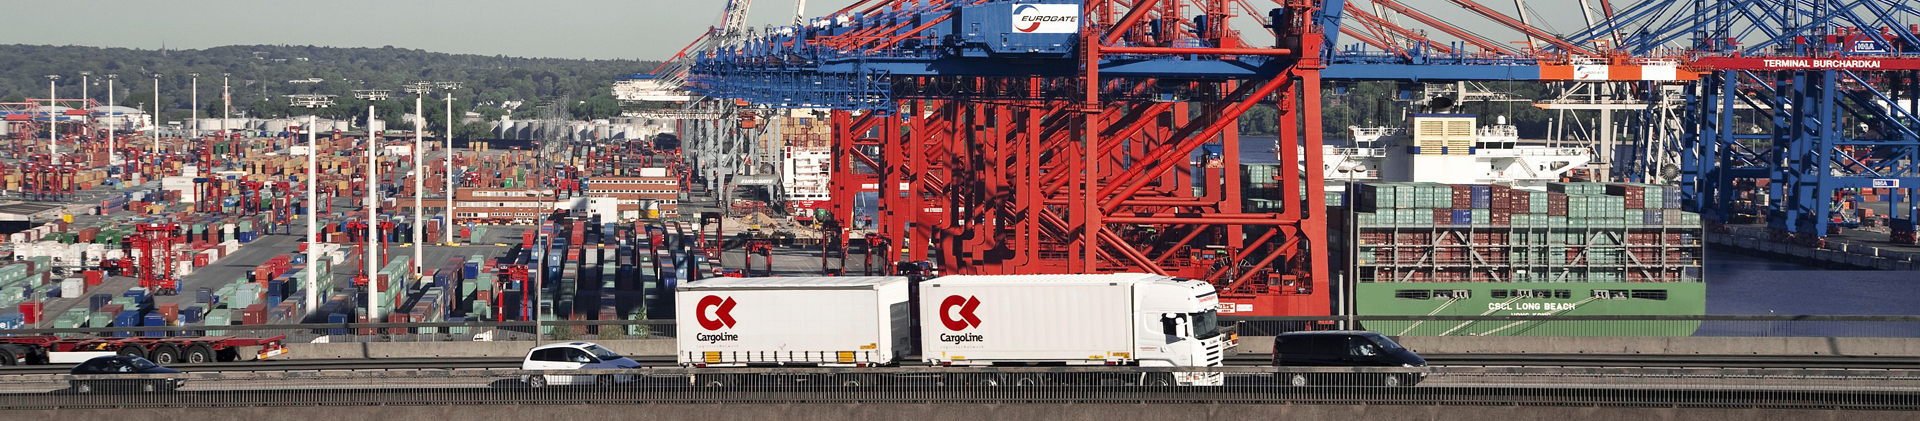 CargoLine am Hamburger Hafen fotografiert von Ulrich Mertens